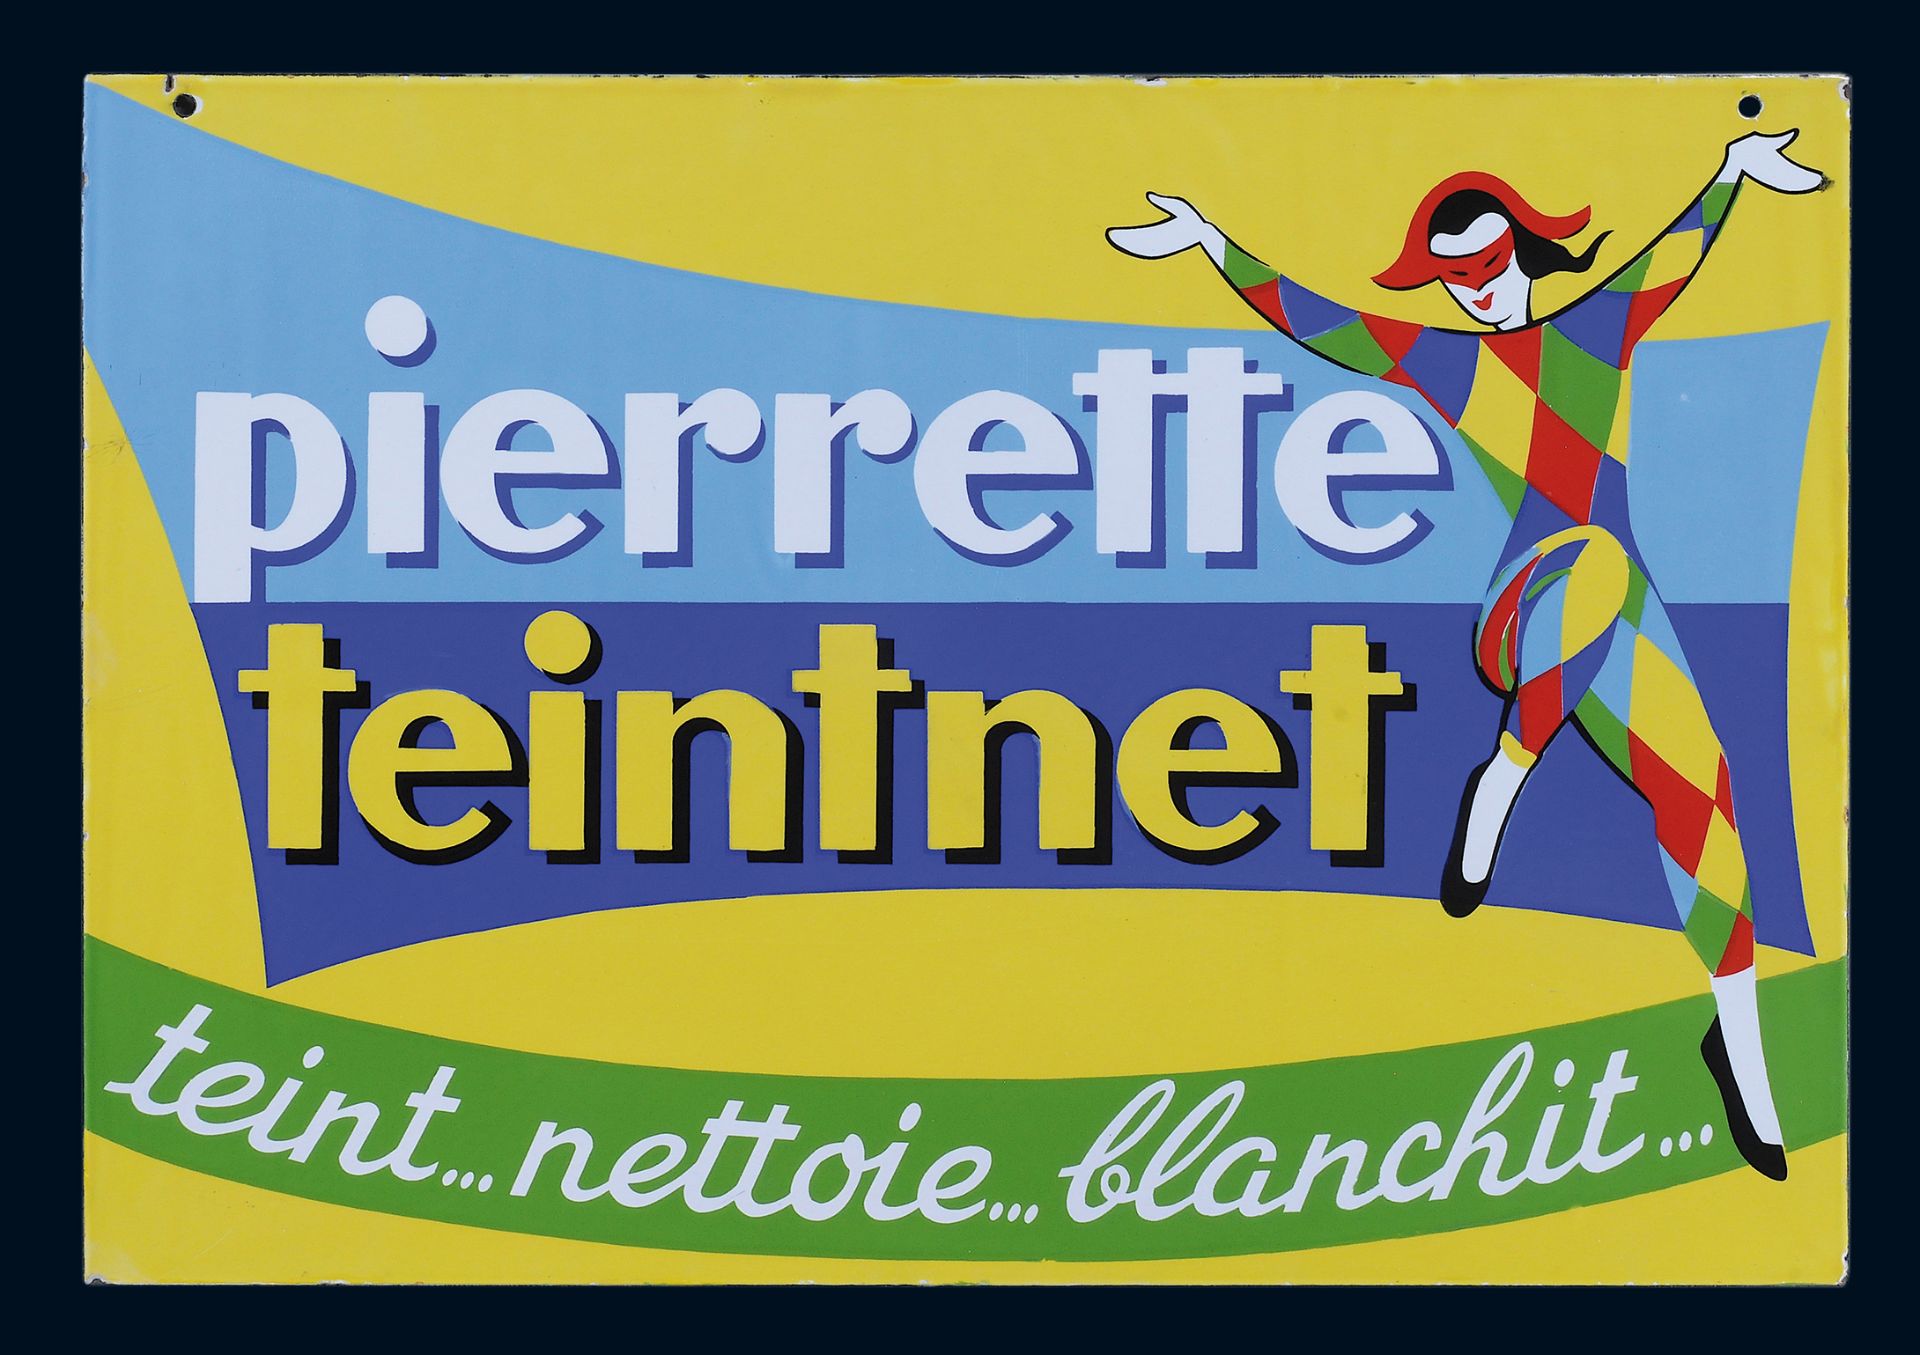 Pierrette teintnet - Image 2 of 4